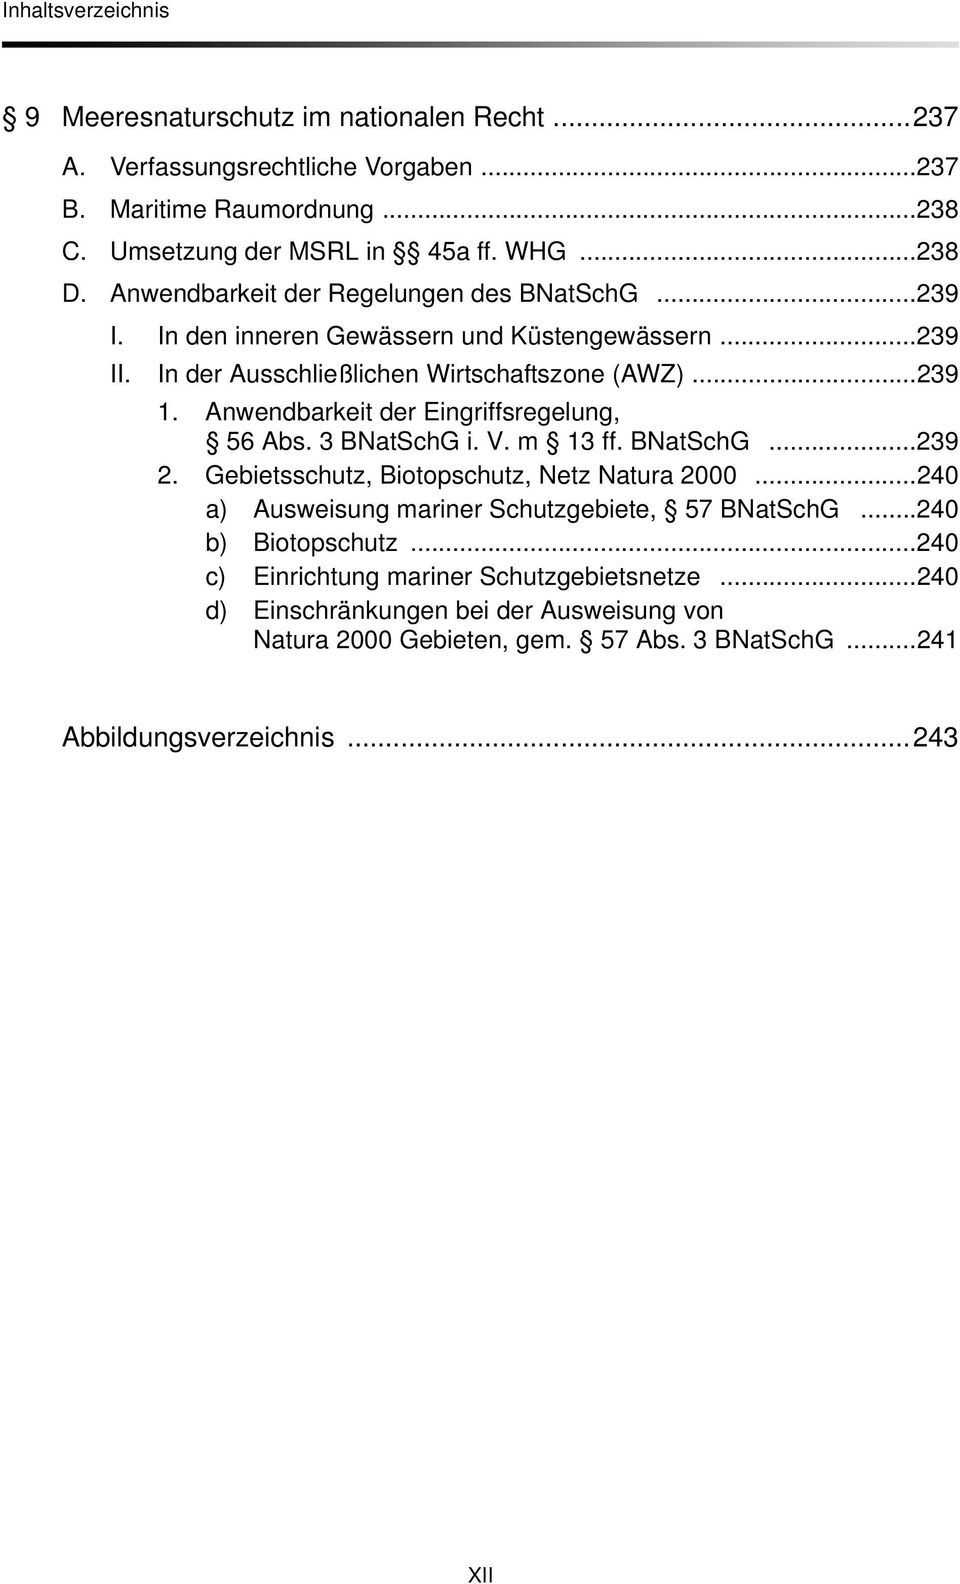 Anwendbarkeit der Eingriffsregelung, 56 Abs. 3 BNatSchG i. V. m 13 ff. BNatSchG...239 2. Gebietsschutz, Biotopschutz, Netz Natura 2000.